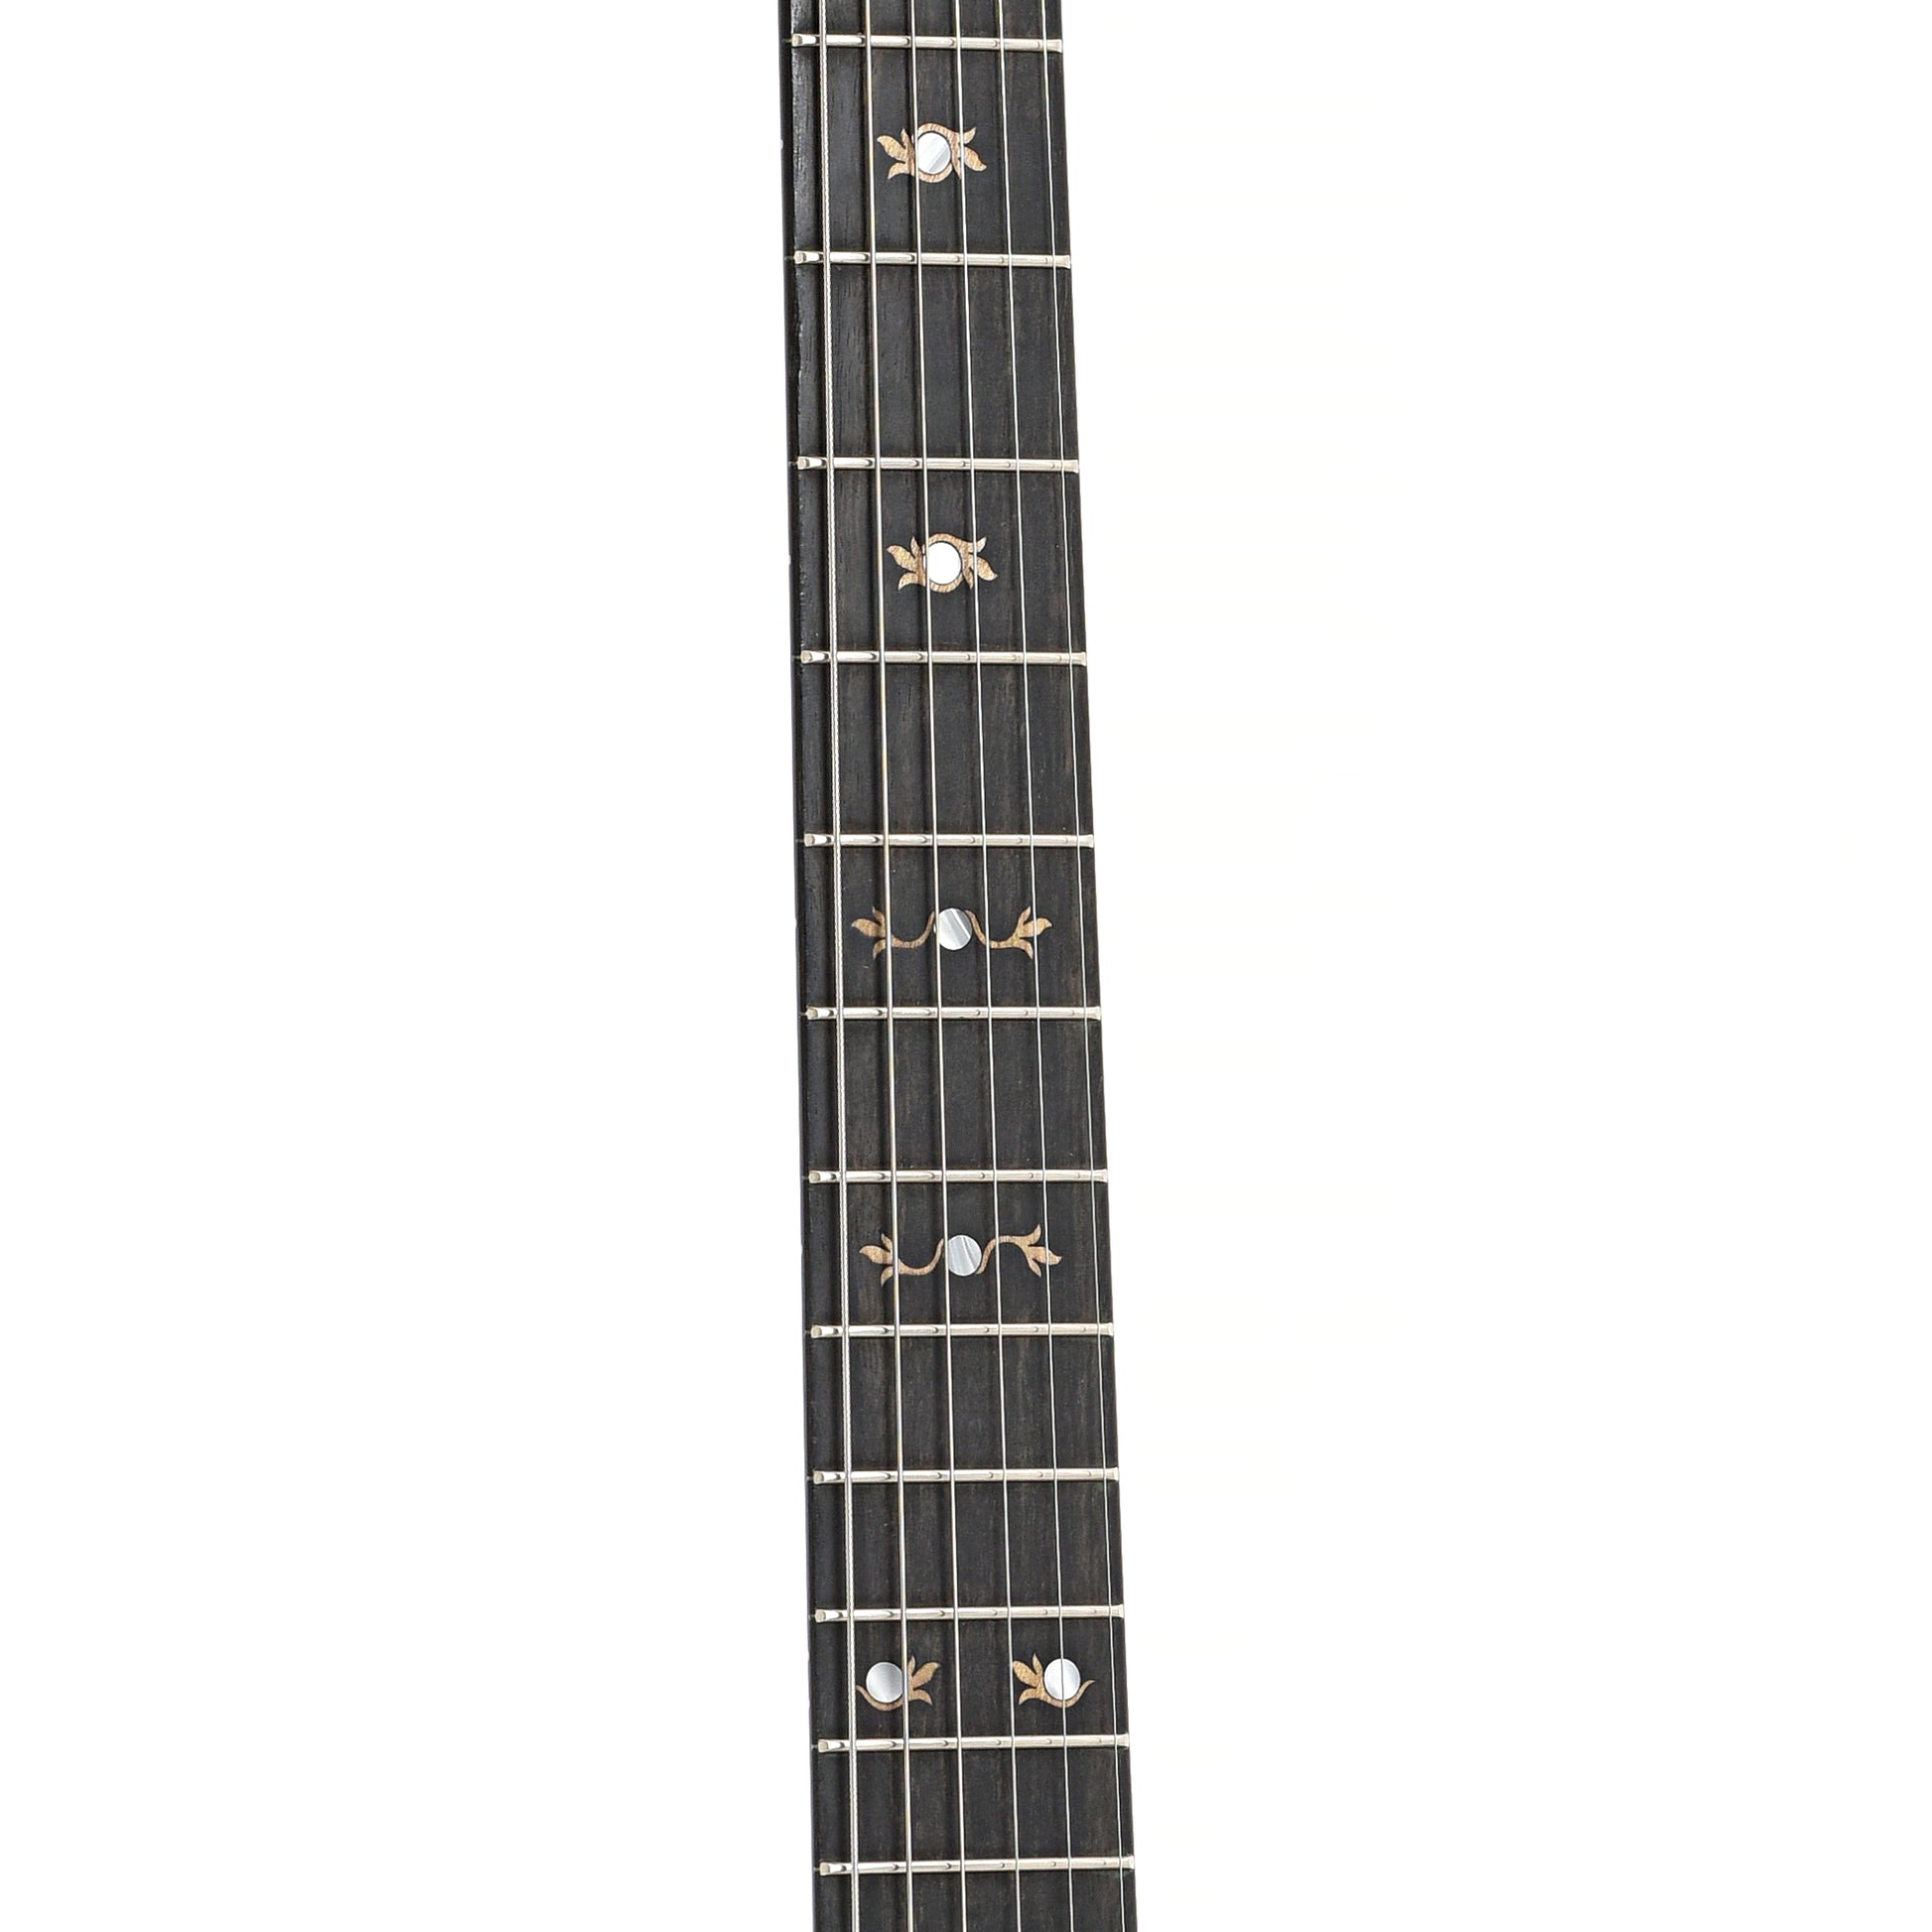 Fretboard of Deering Boston 6 A/E Banjo-Guitar (2012)